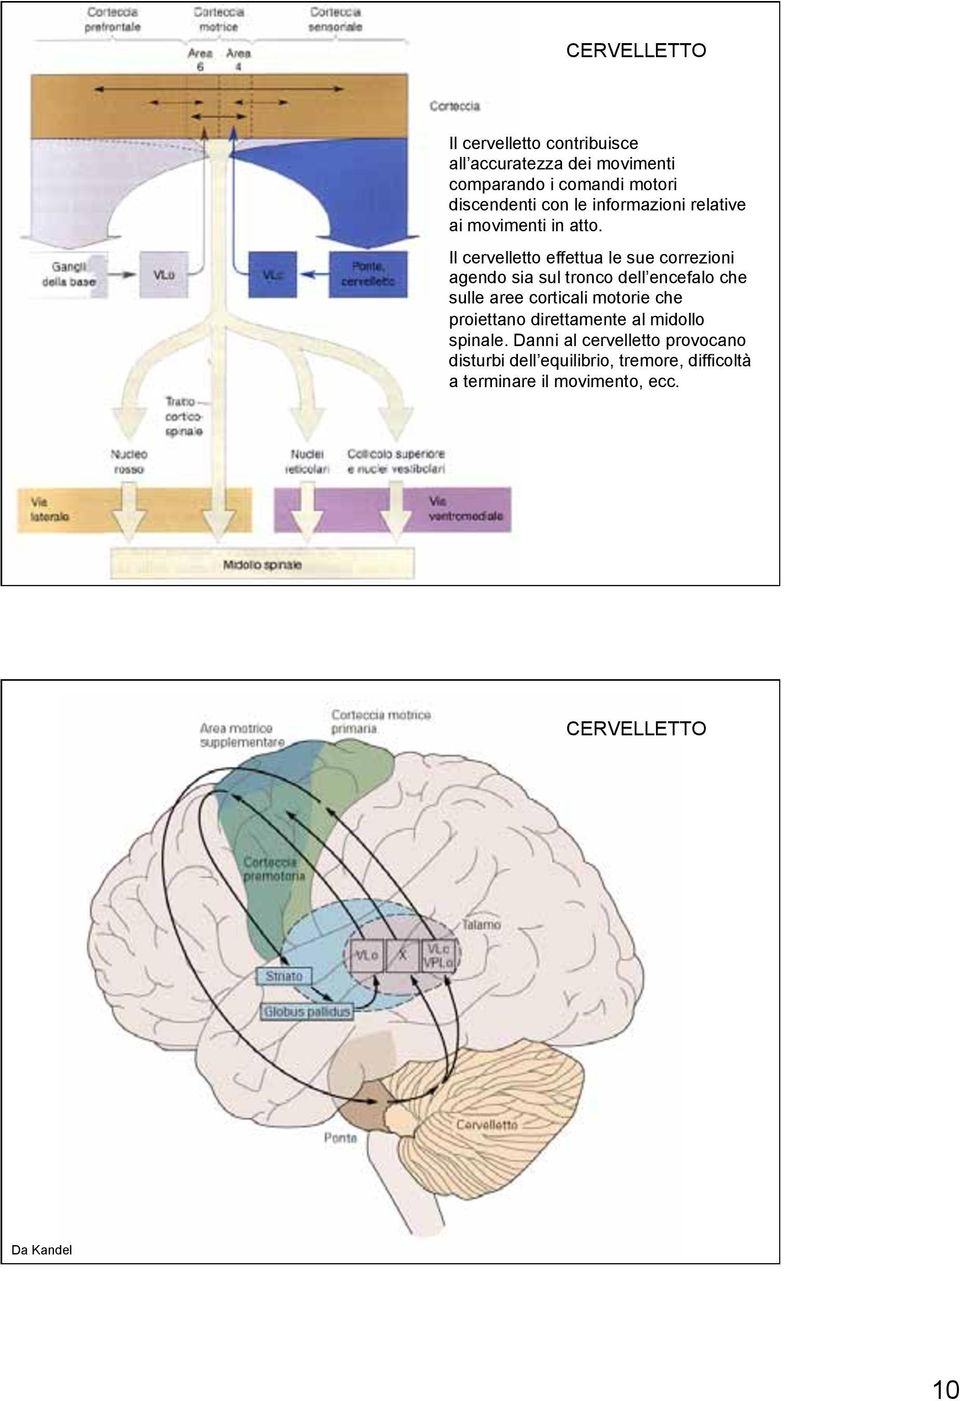 Il cervelletto effettua le sue correzioni agendo sia sul tronco dell encefalo che sulle aree corticali motorie